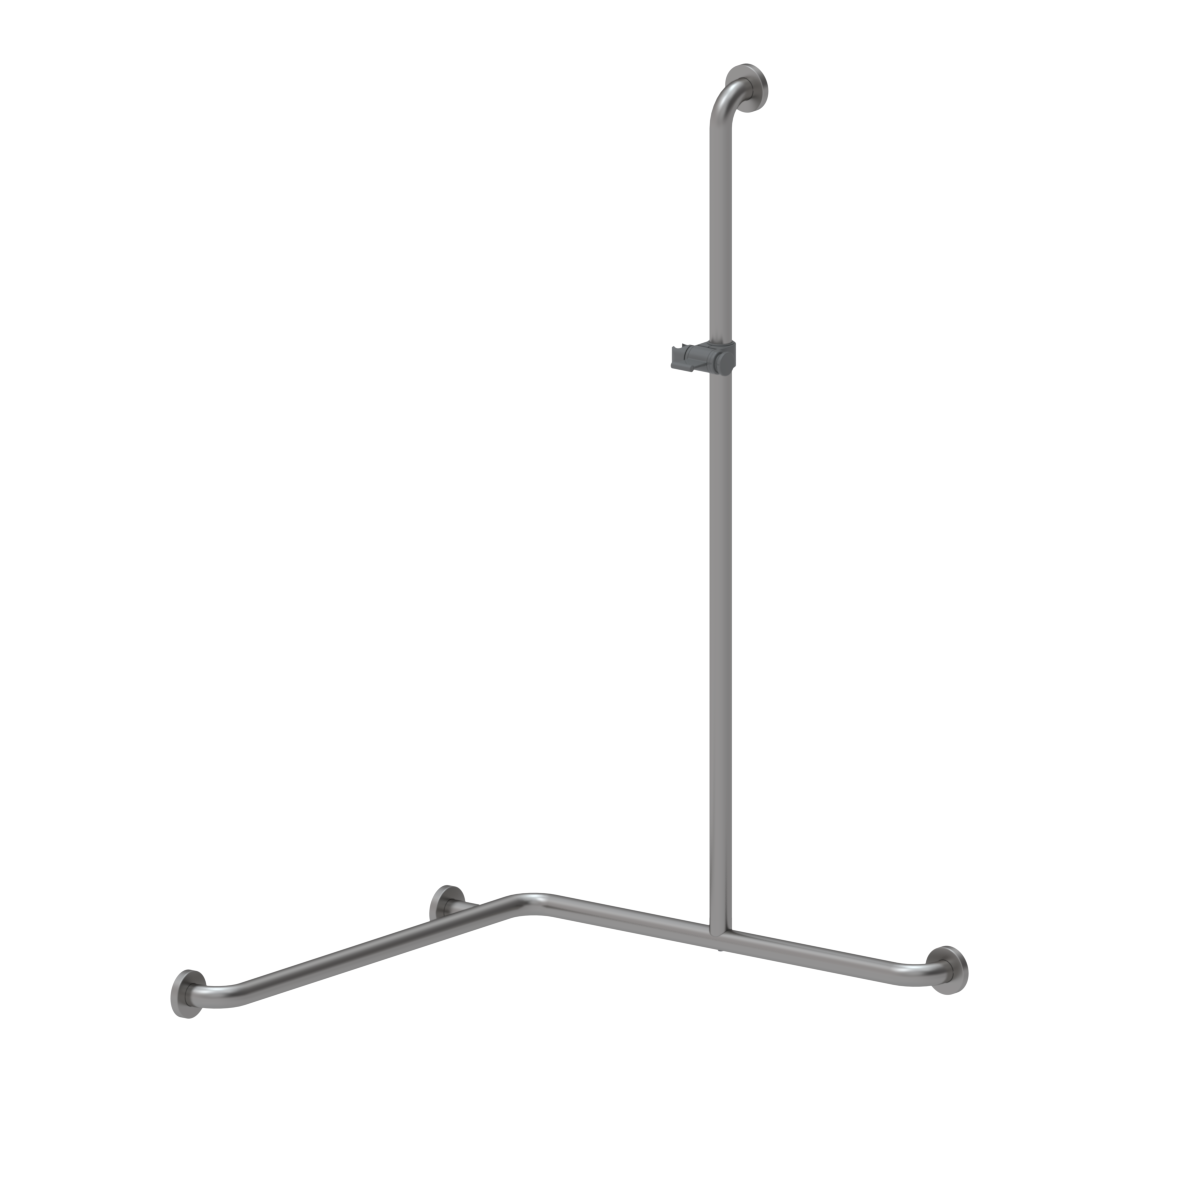 Inox Care Duschhandlauf, mit Brausehalterstange mittig, rechts, 750 x 750 x 1200 mm, Edelstahl, Brausehalter in Dunkelgrau (018)